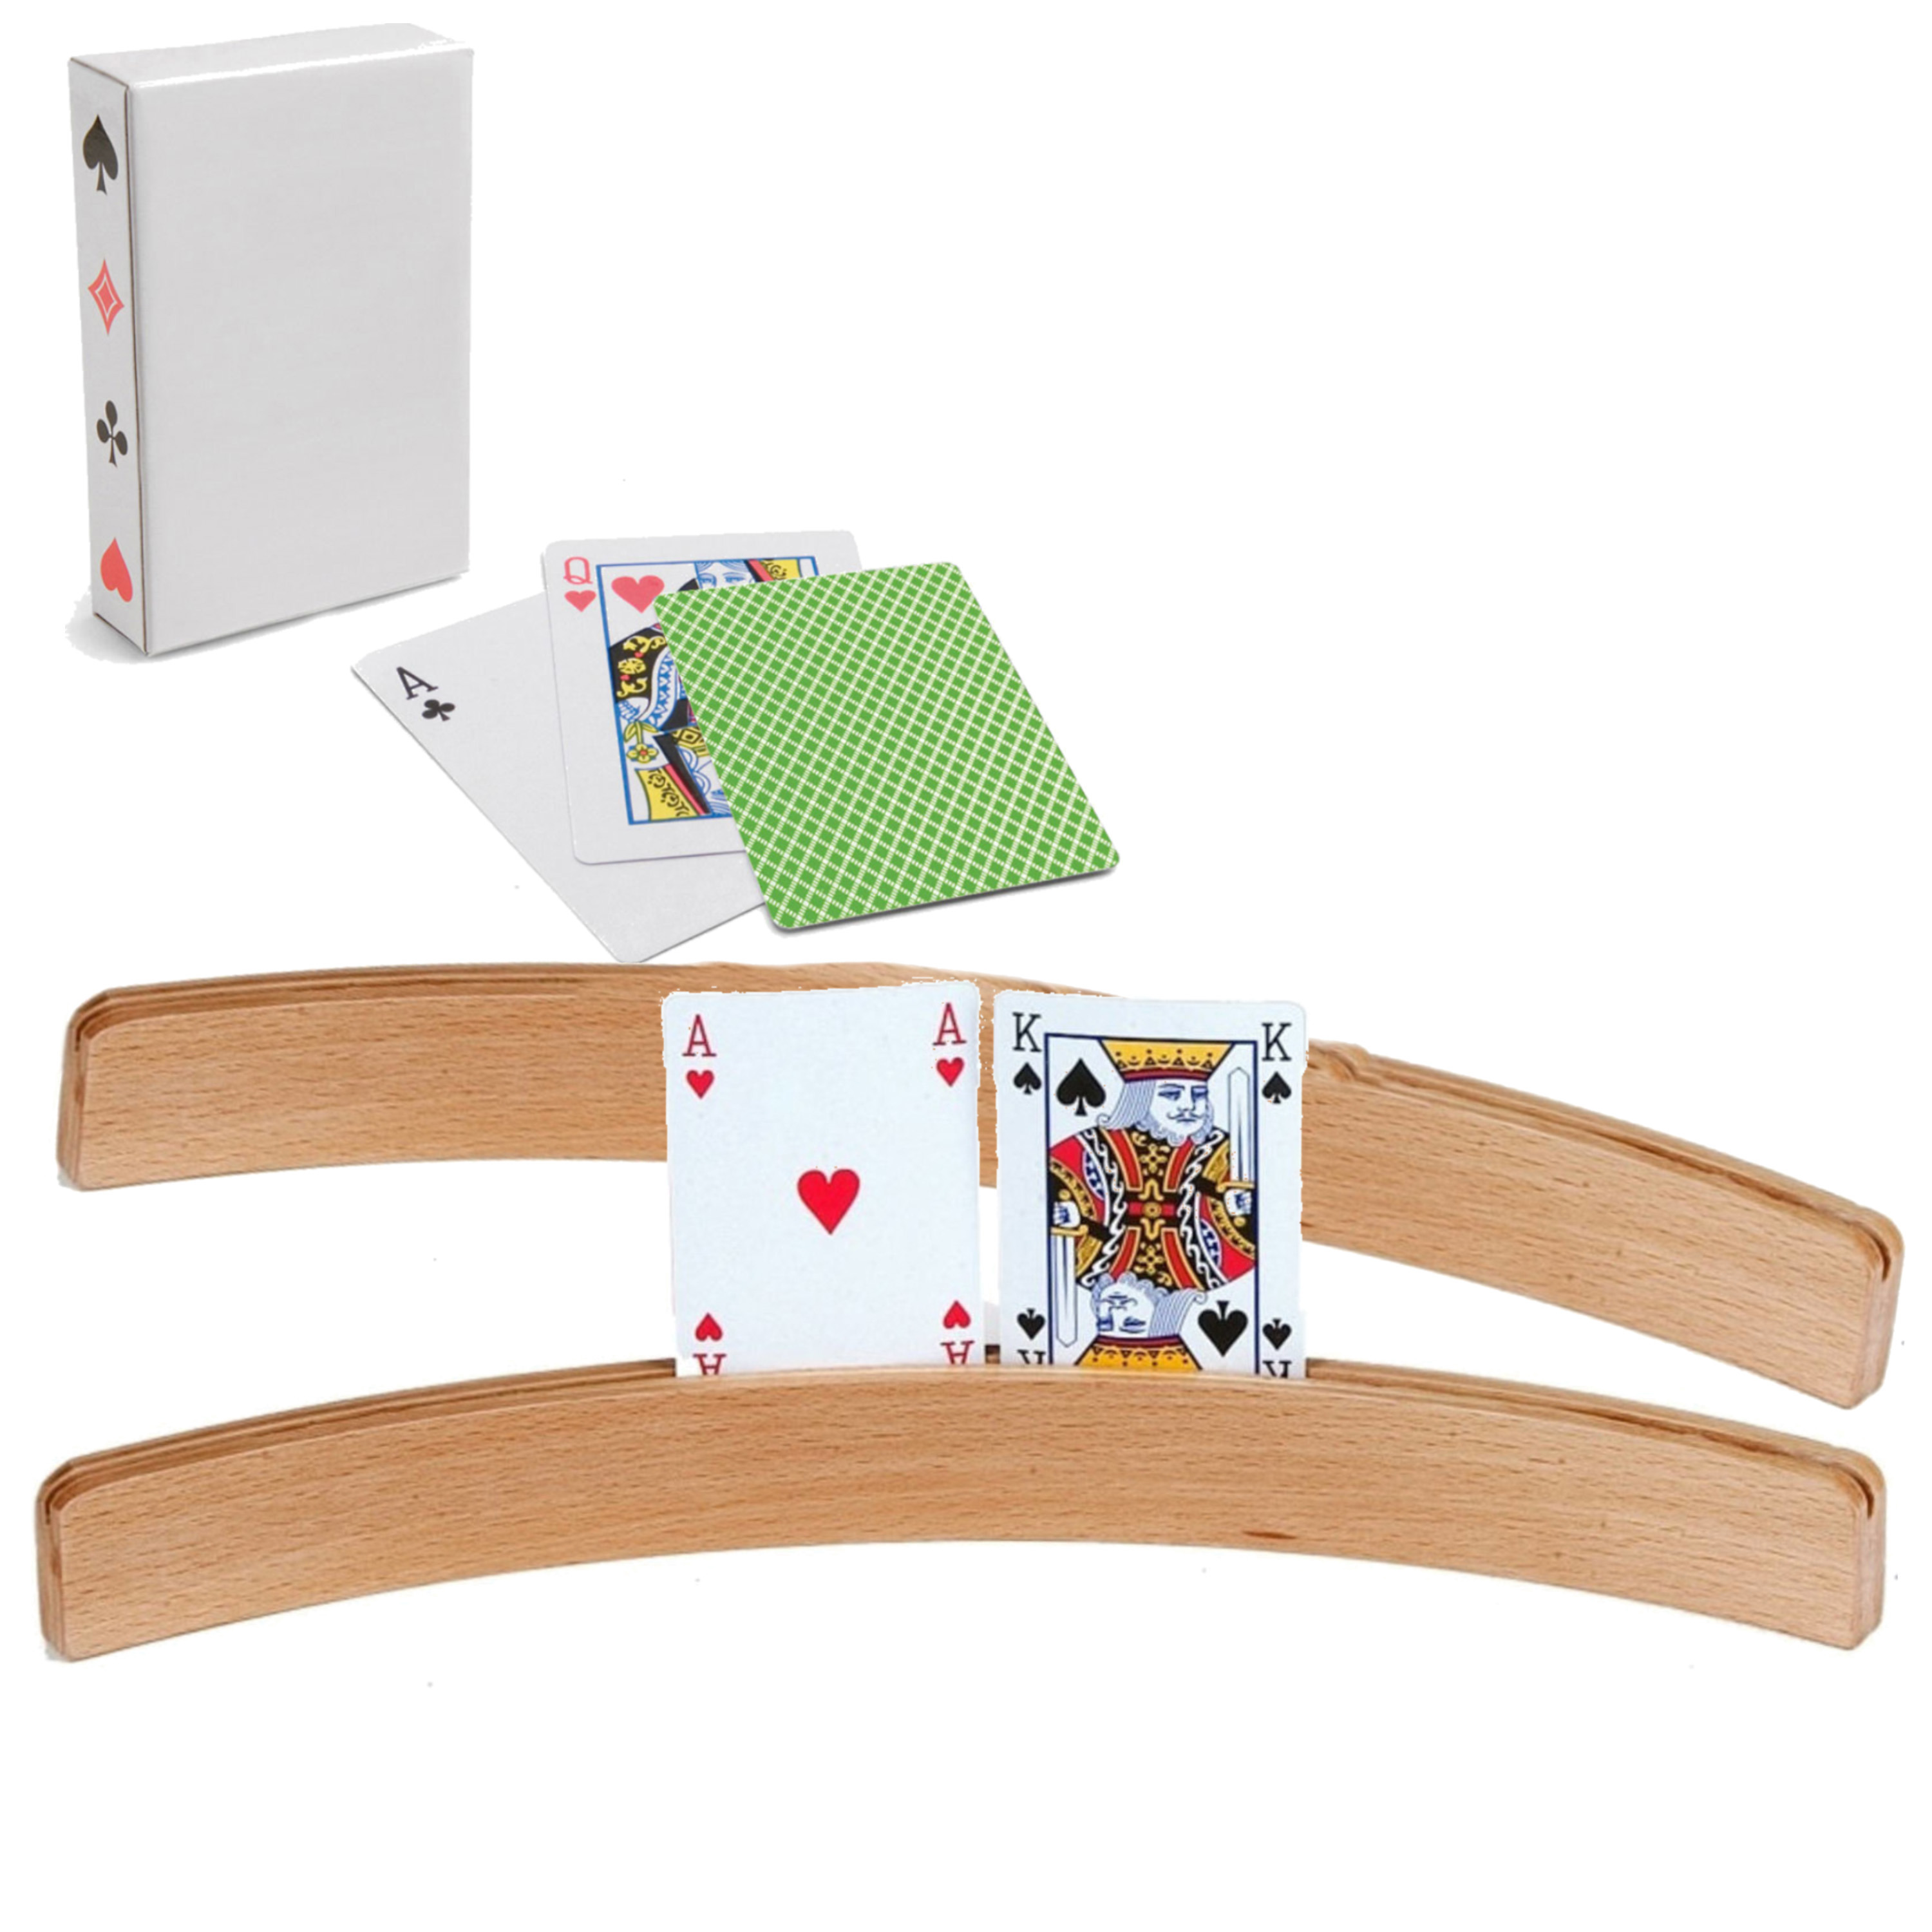 2x Speelkaartenhouders hout 50 cm inclusief 54 speelkaarten groen -